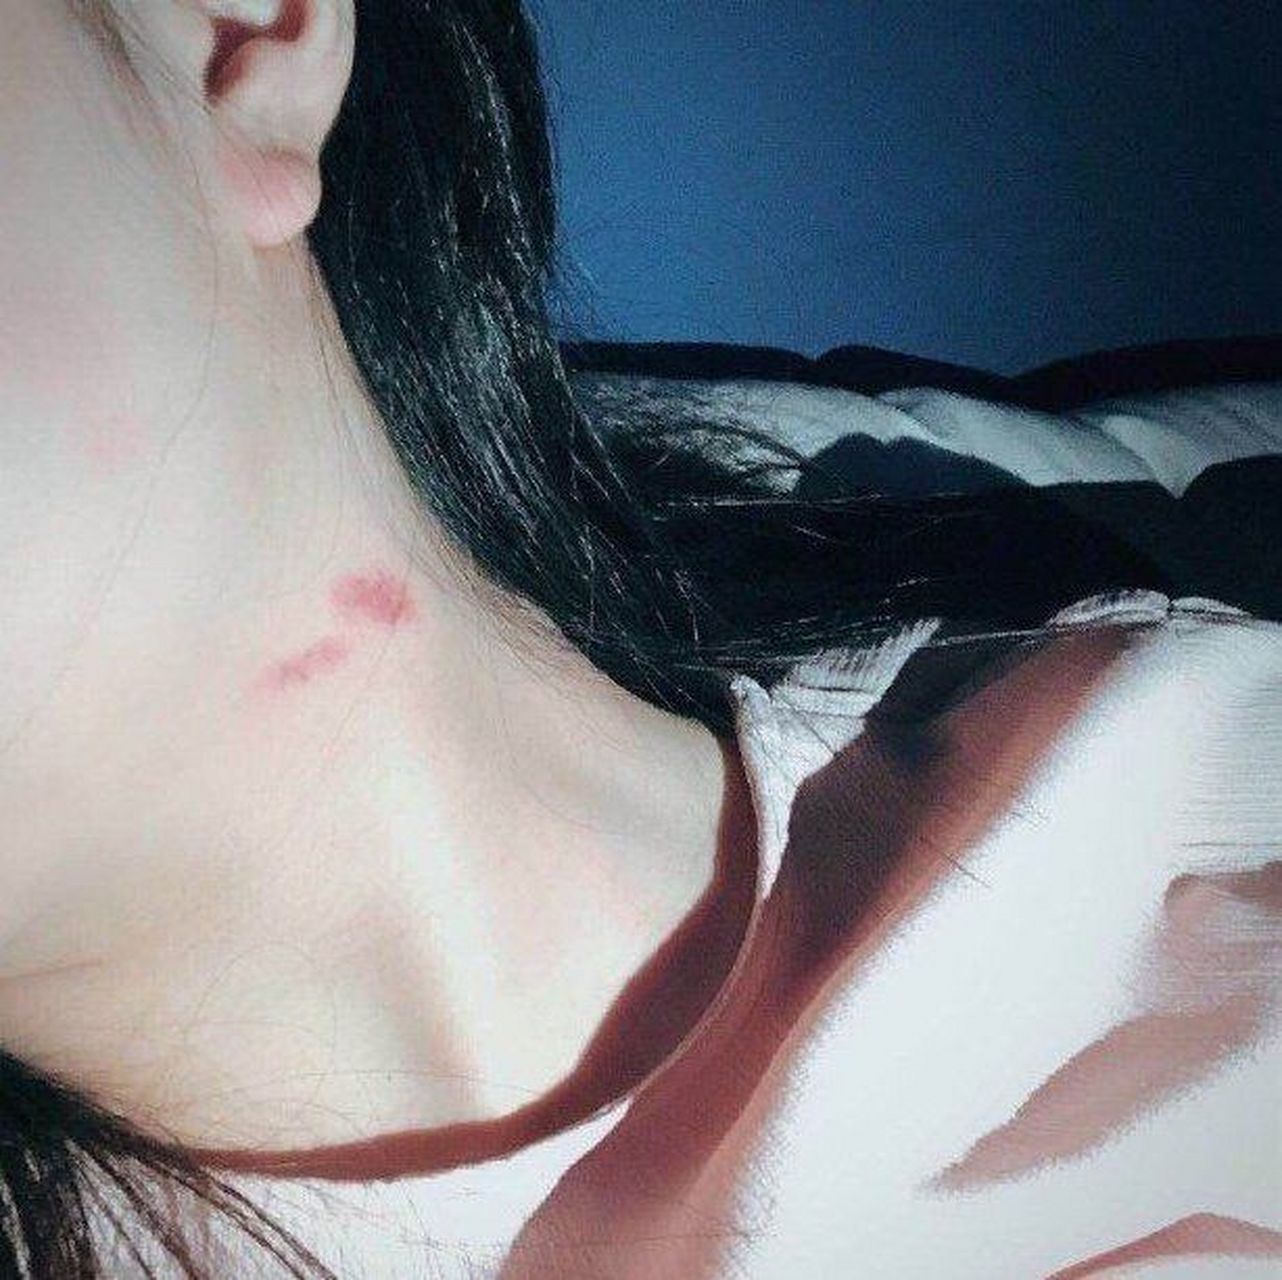 女生脖子疼被吸血图片